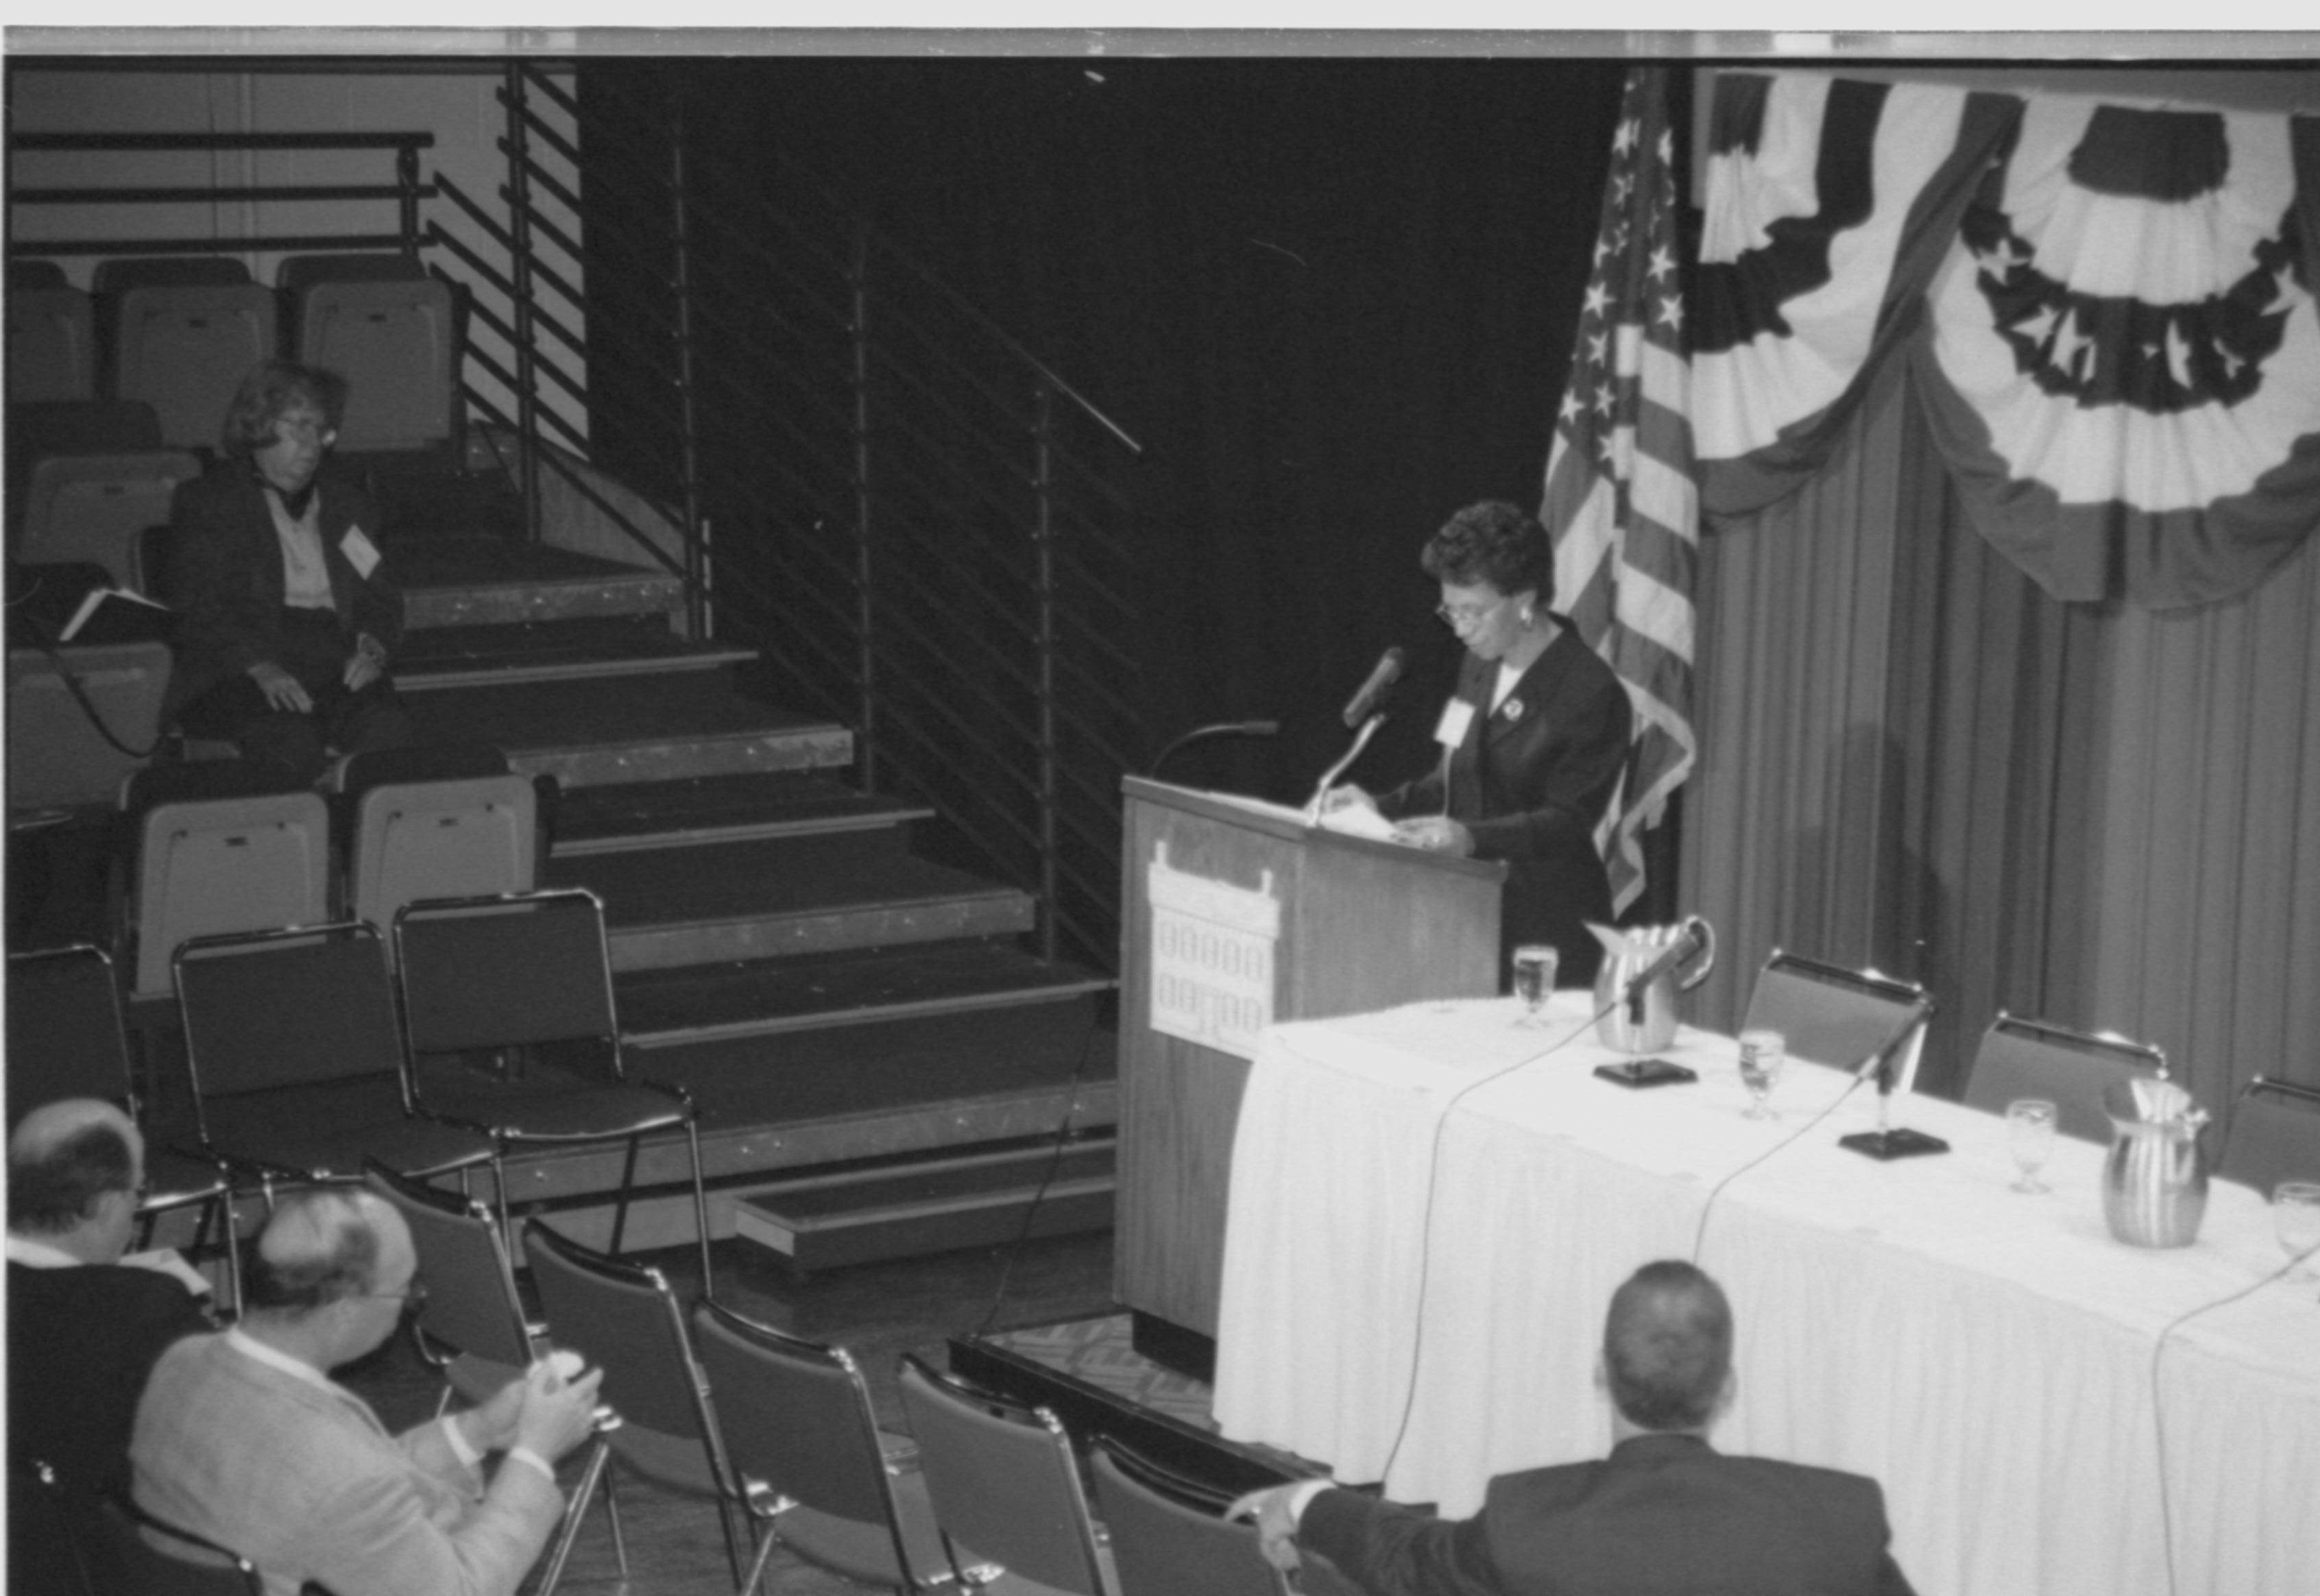 Lady speaking at podium, looking at notes. 1999-16; 37 Colloquium, 1999